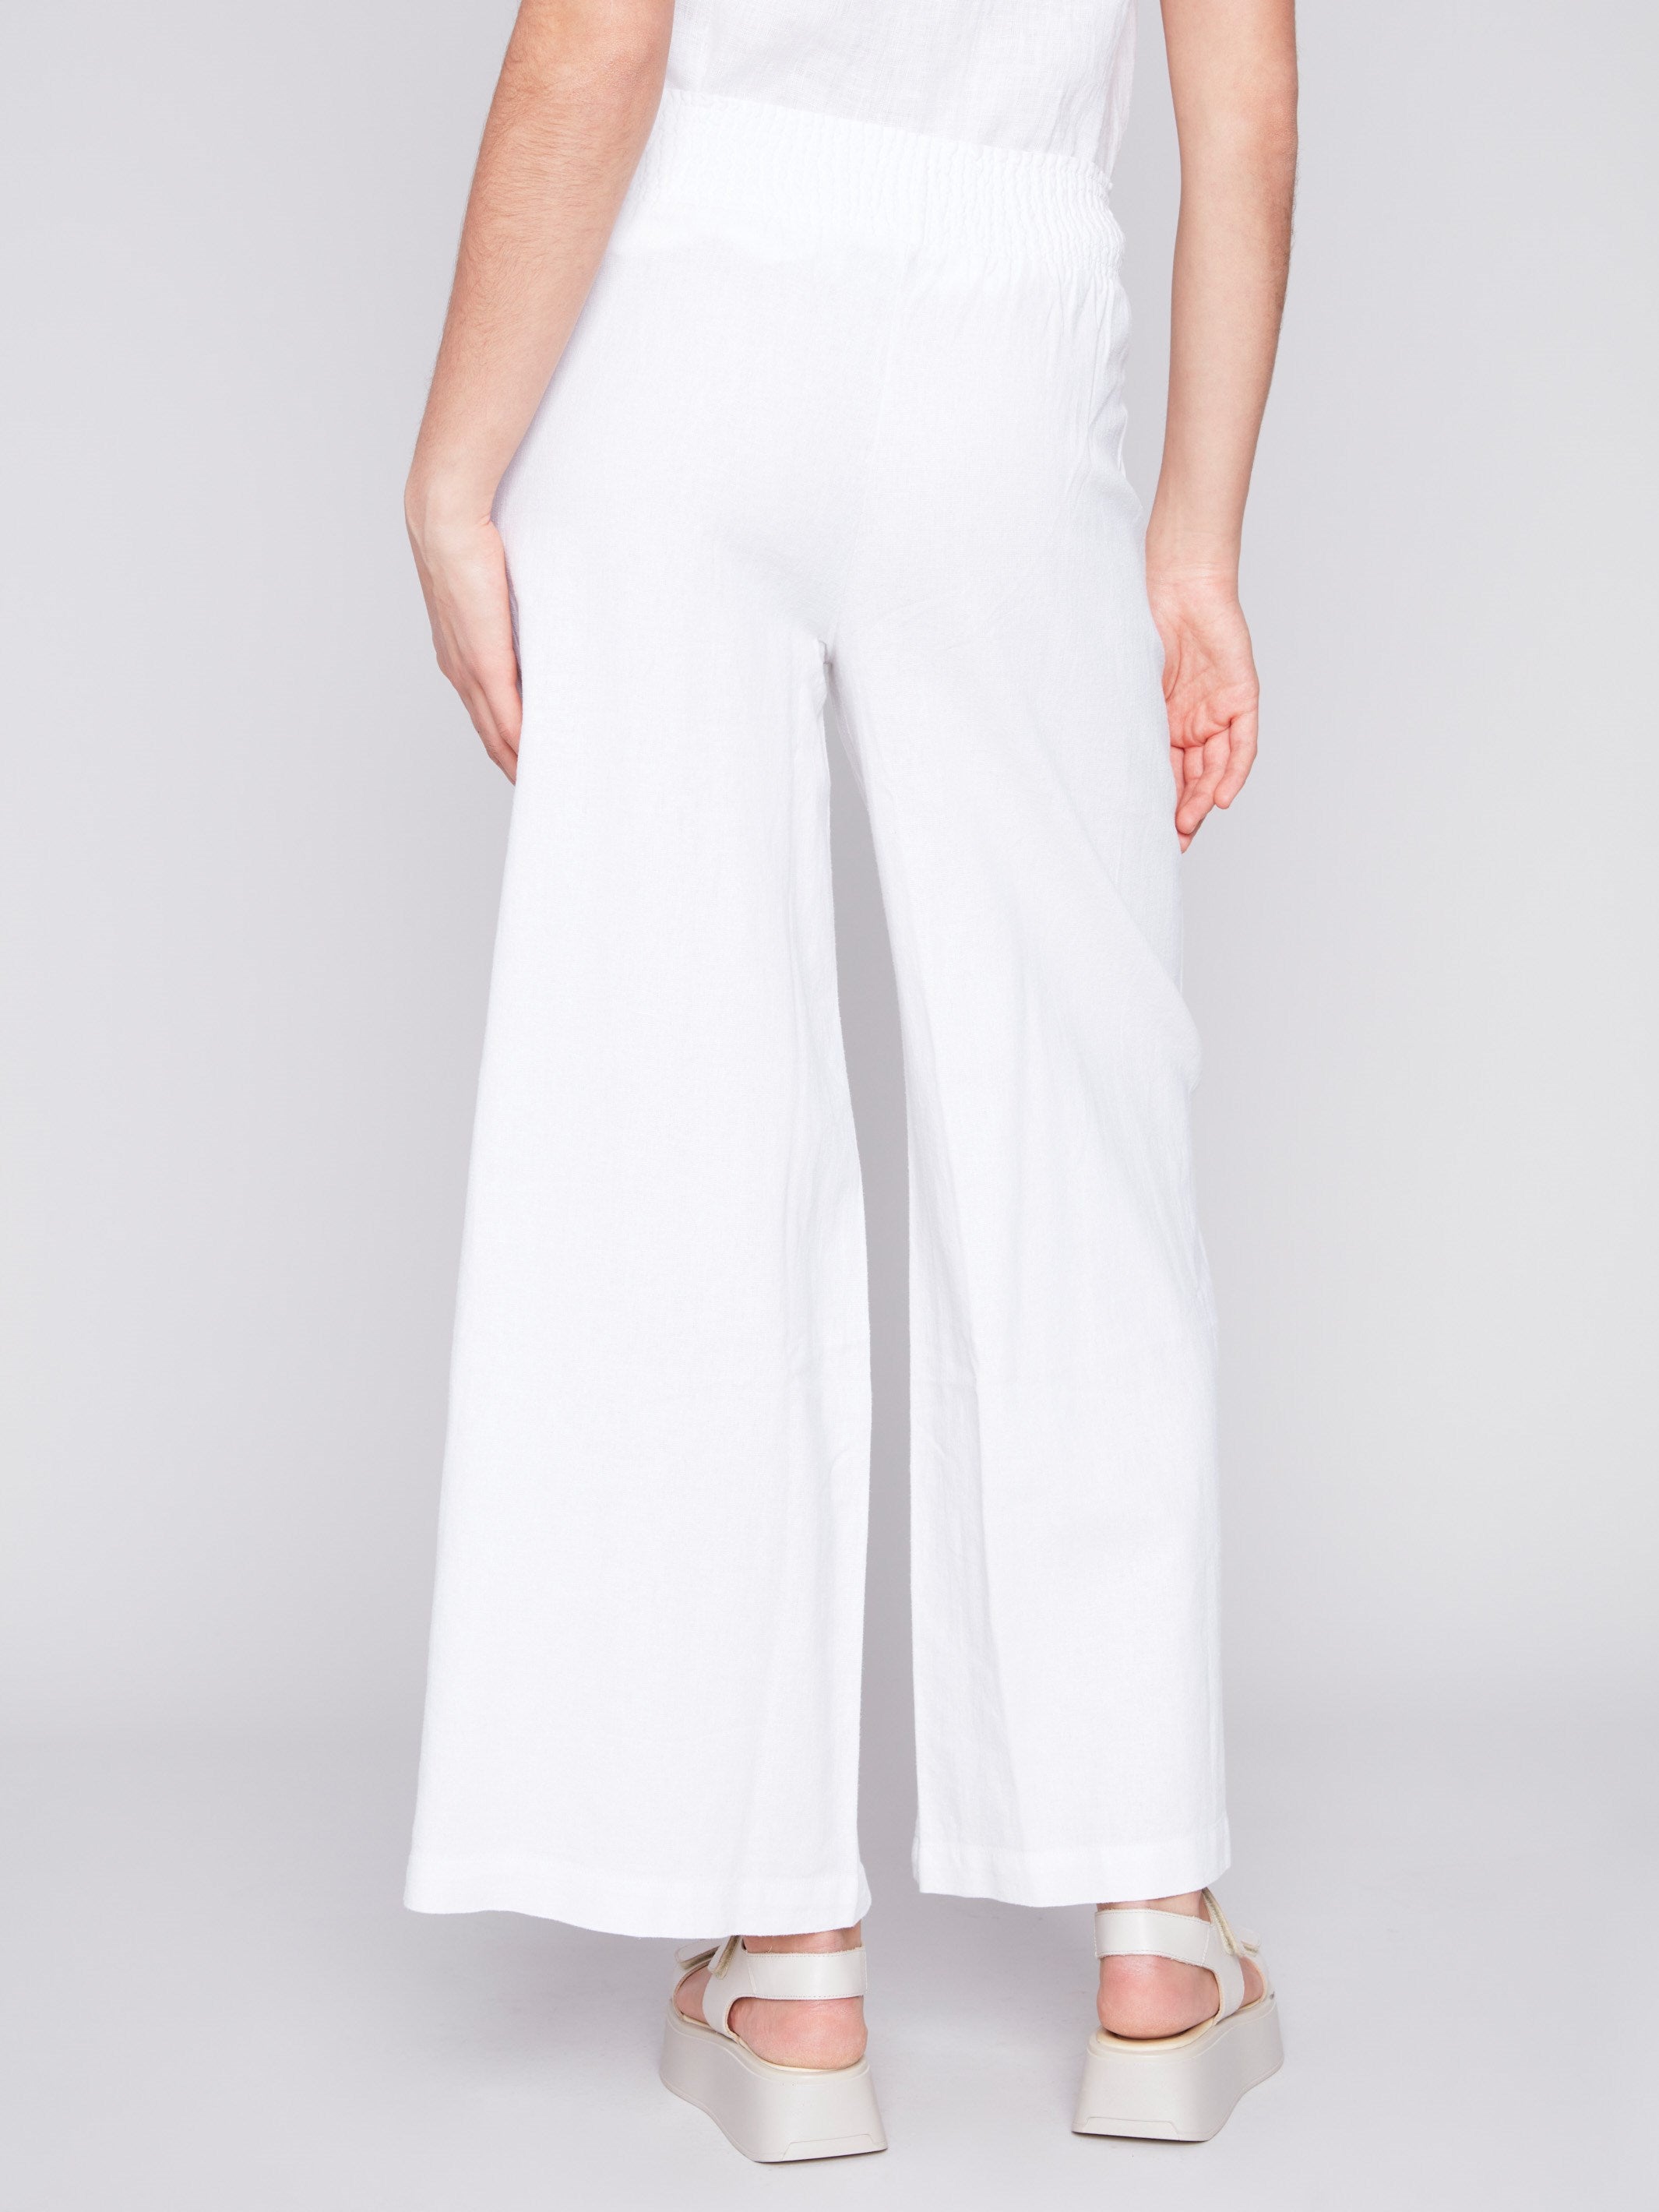 Charlie B Elastic Waist Linen-Blend Pull-On Pants - White - Image 3